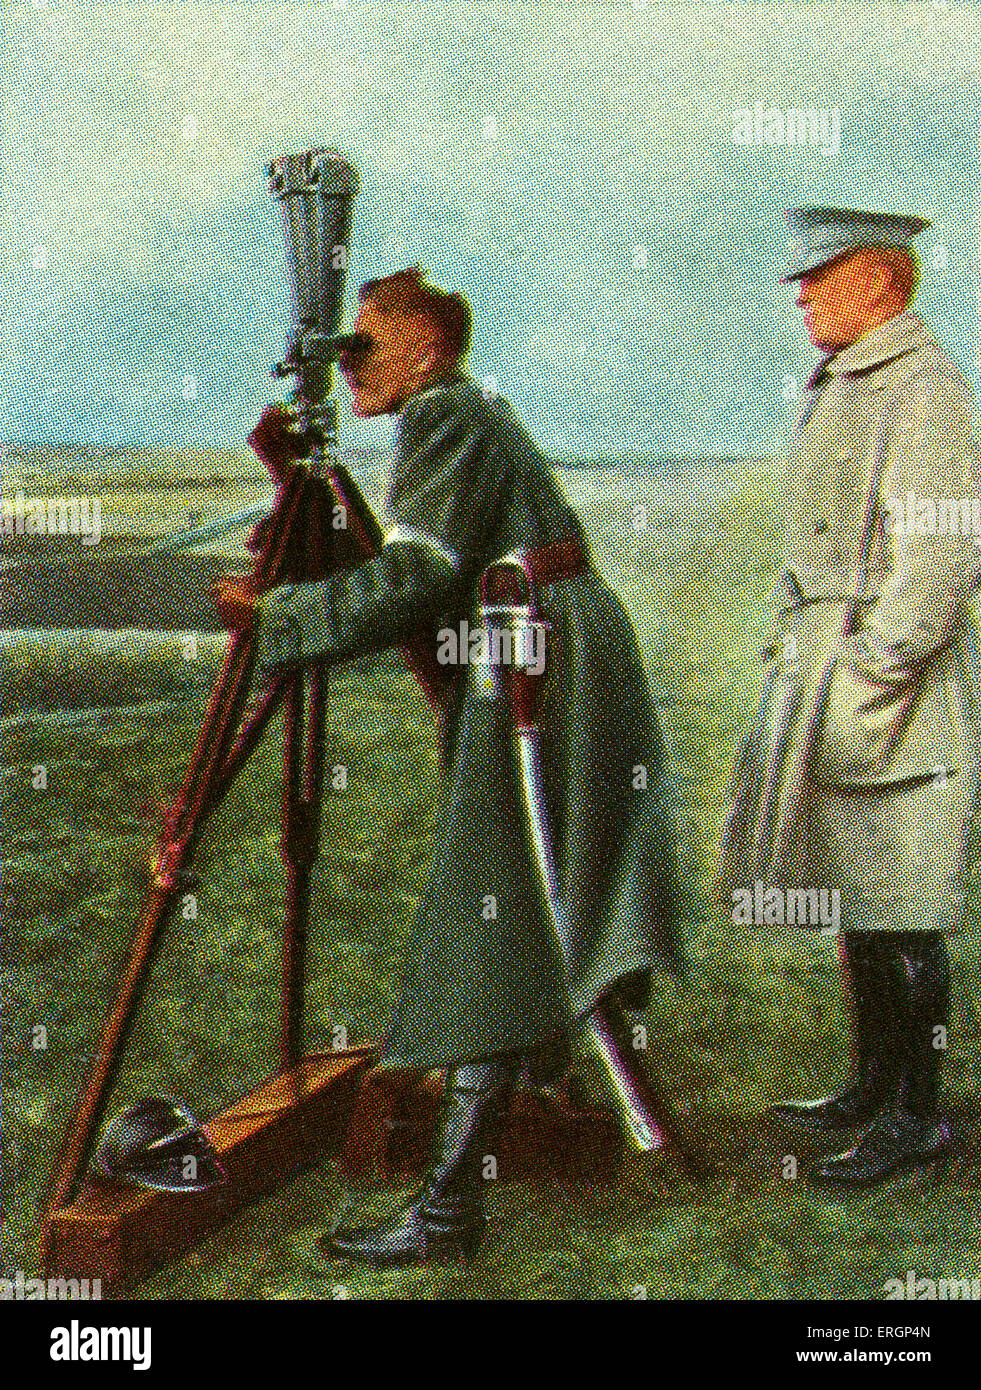 Polnischer Offizier verwendet Scherenfernrohr oder Scherenfernrohr (Scheren-Teleskop) Uhren Truppenbewegungen.  Verwendet in Stockfoto